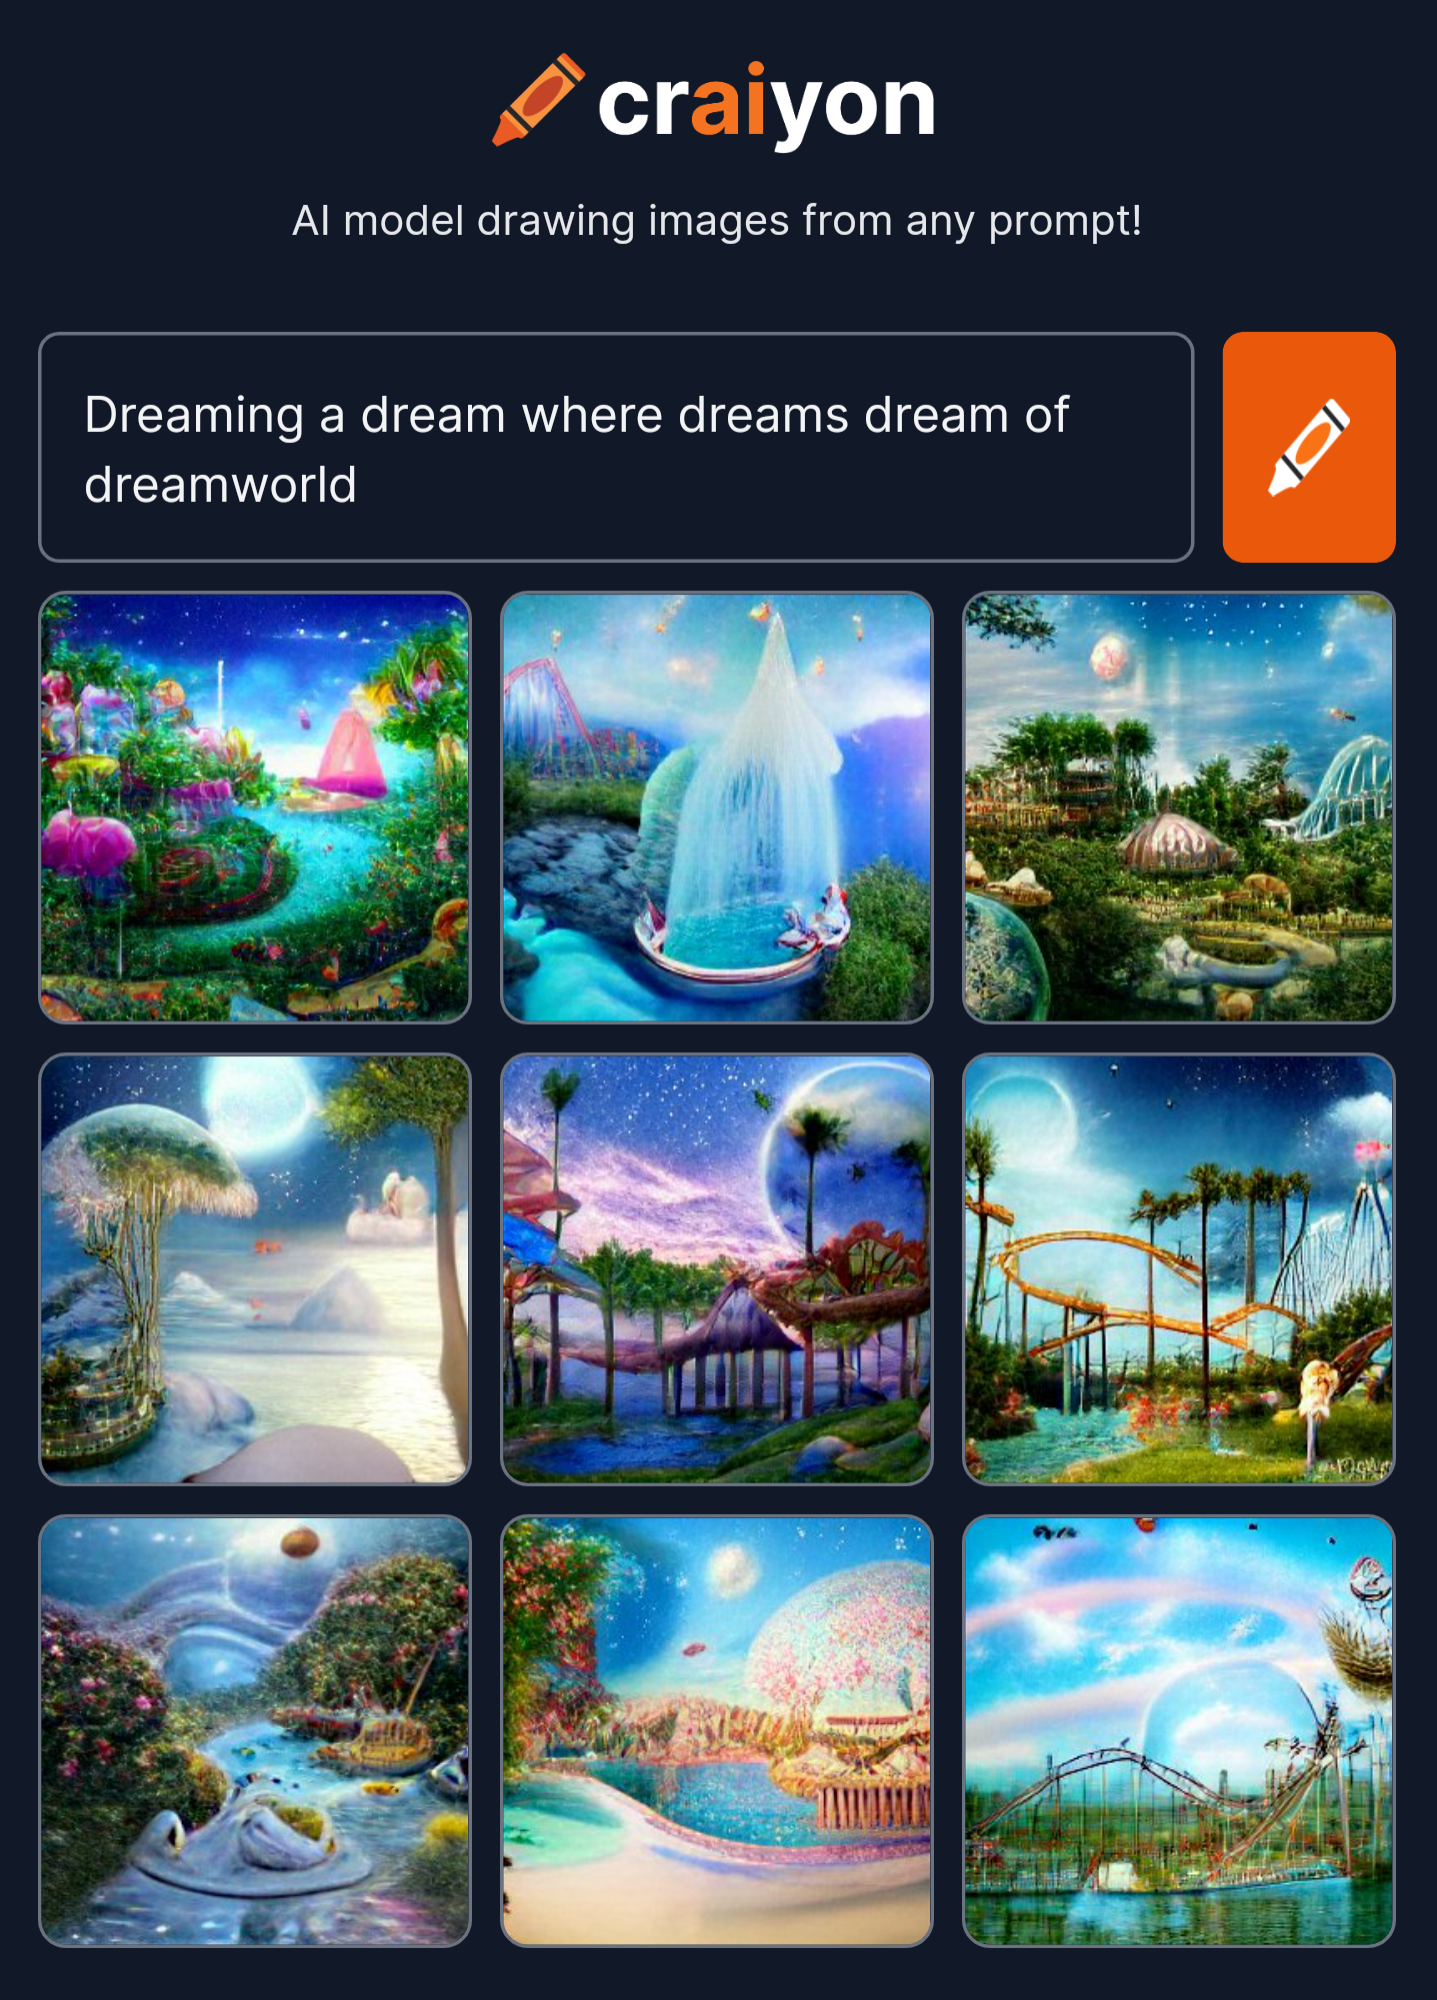 craiyon_201657_Dreaming_a_dream_where_dreams_dream_of_dreamworld.jpg.png